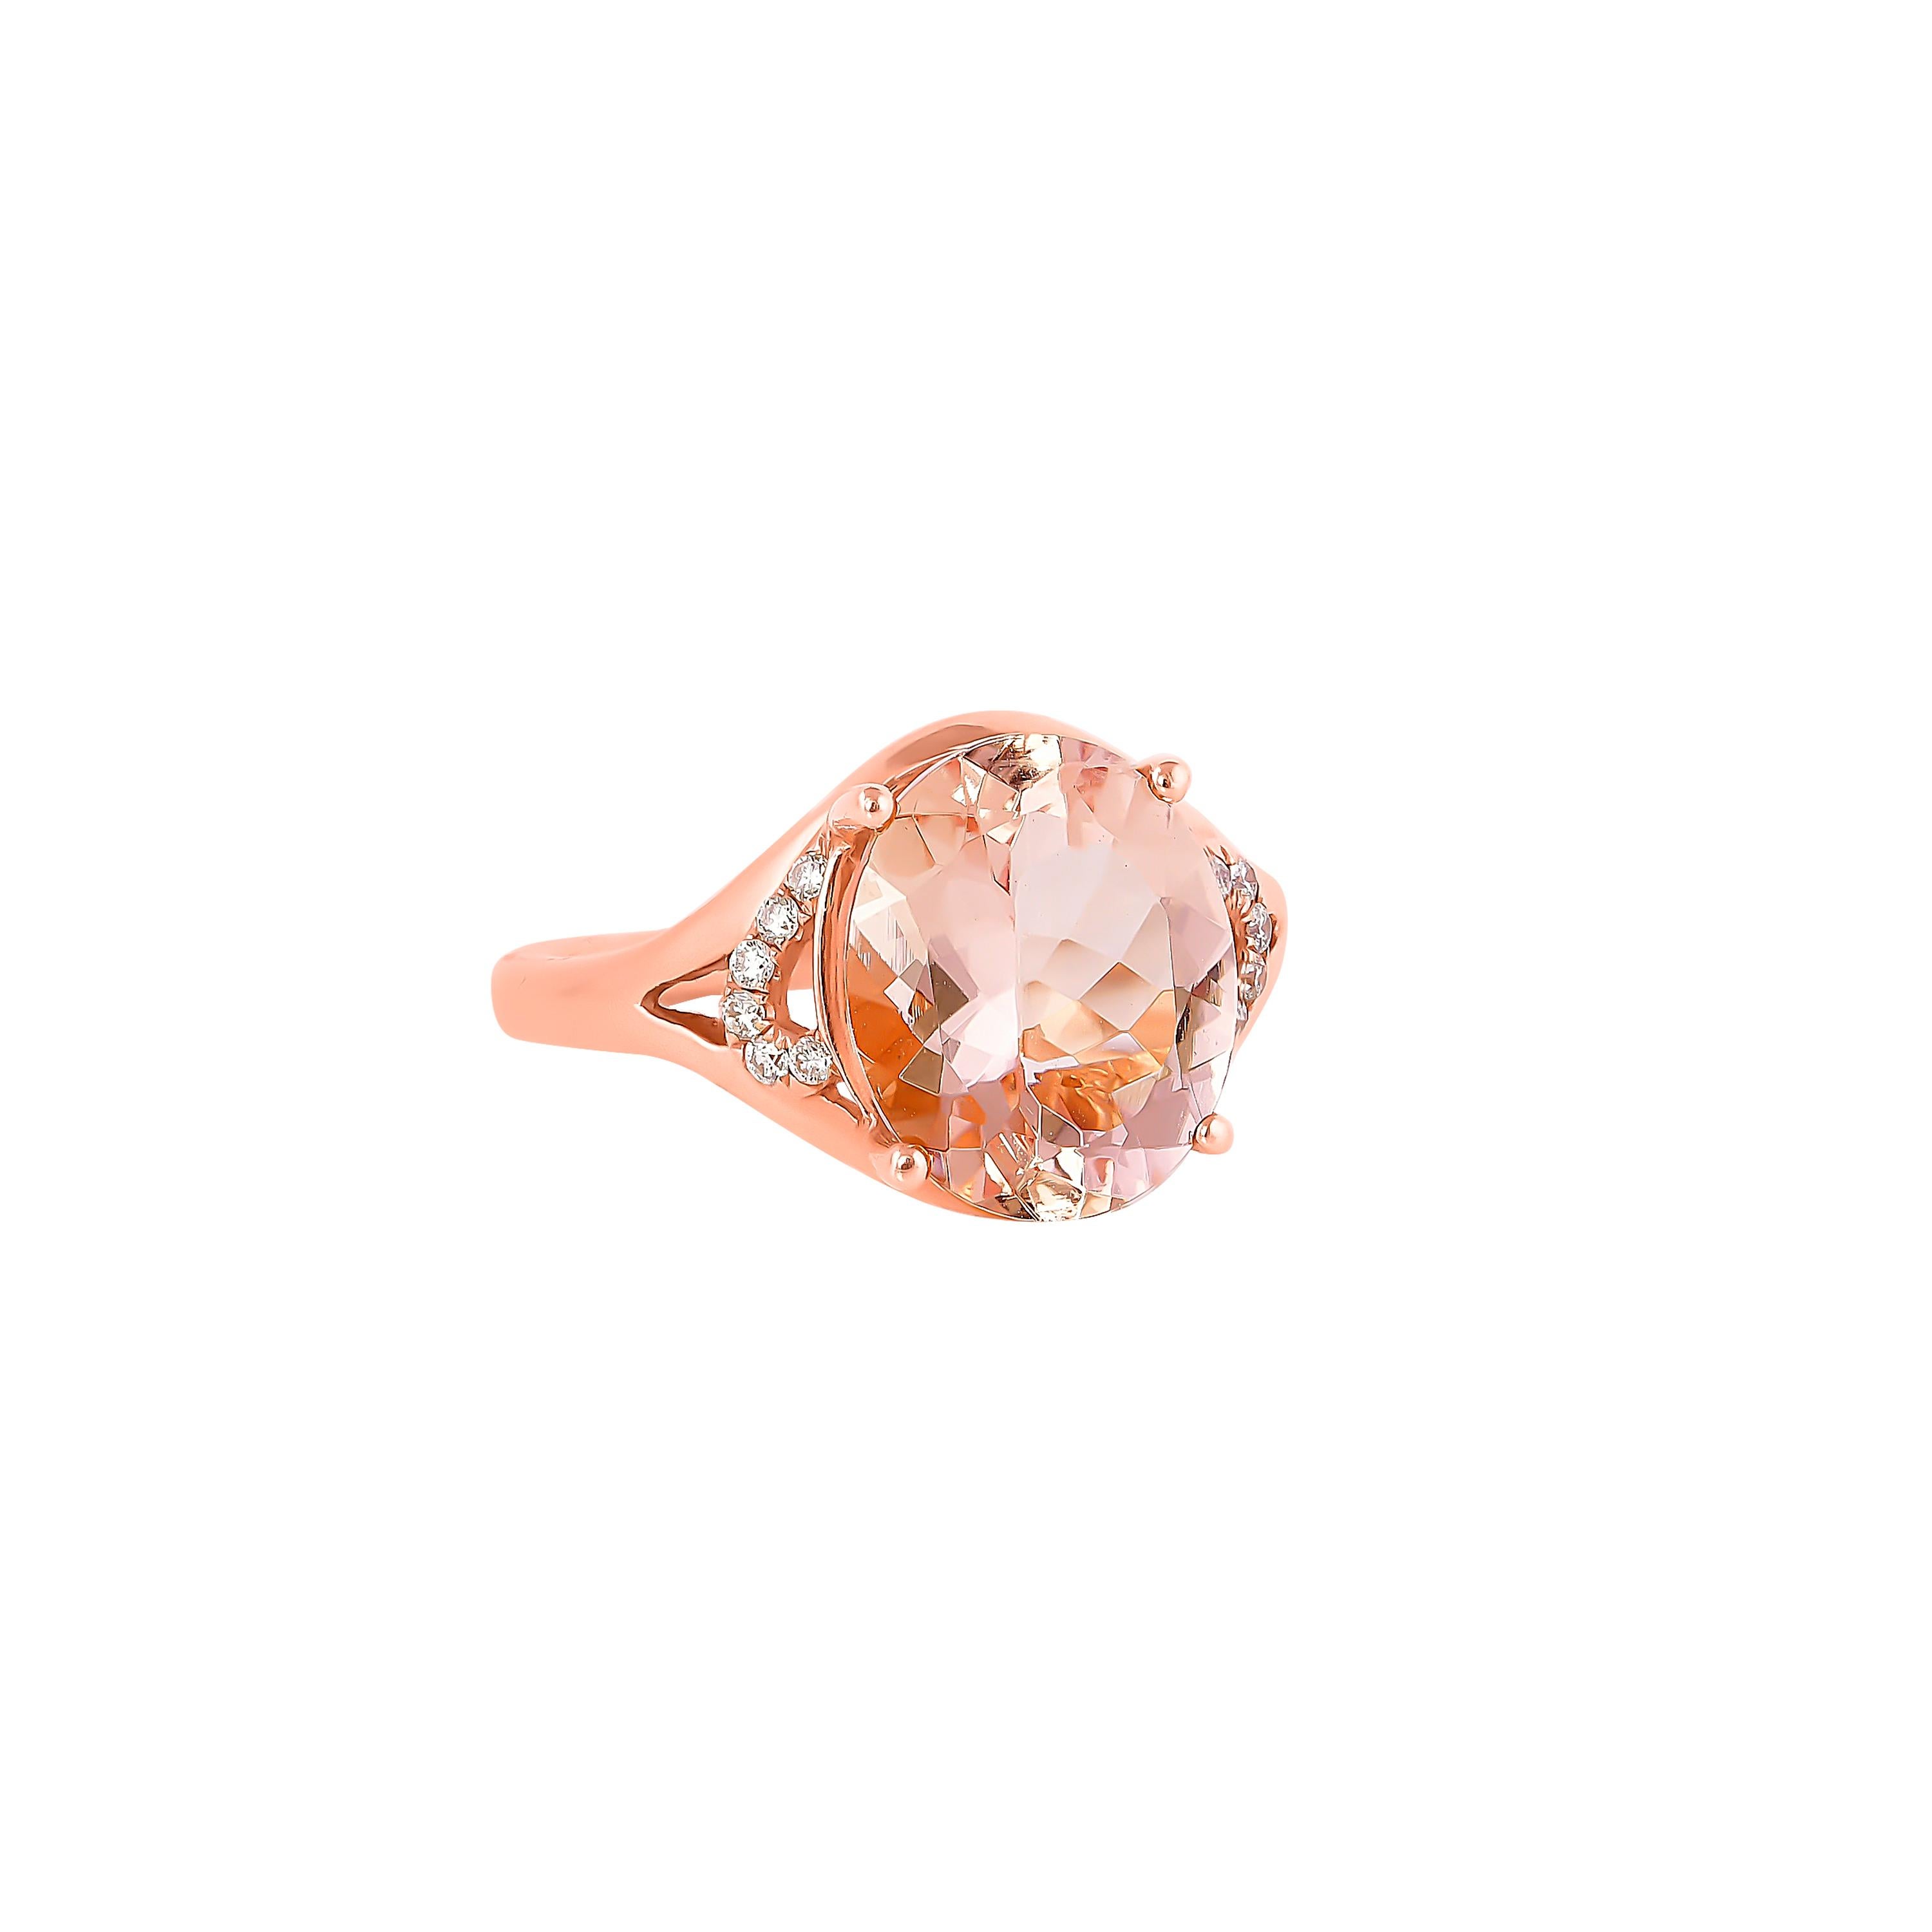 Diese Kollektion bietet eine Reihe von prächtigen Morganiten! Die mit Diamanten besetzten Ringe sind aus Roségold gefertigt und wirken klassisch und elegant. 

Klassischer Morganit-Ring aus 18 Karat Roségold mit Diamant. 

Morganit: 3,87 Karat,